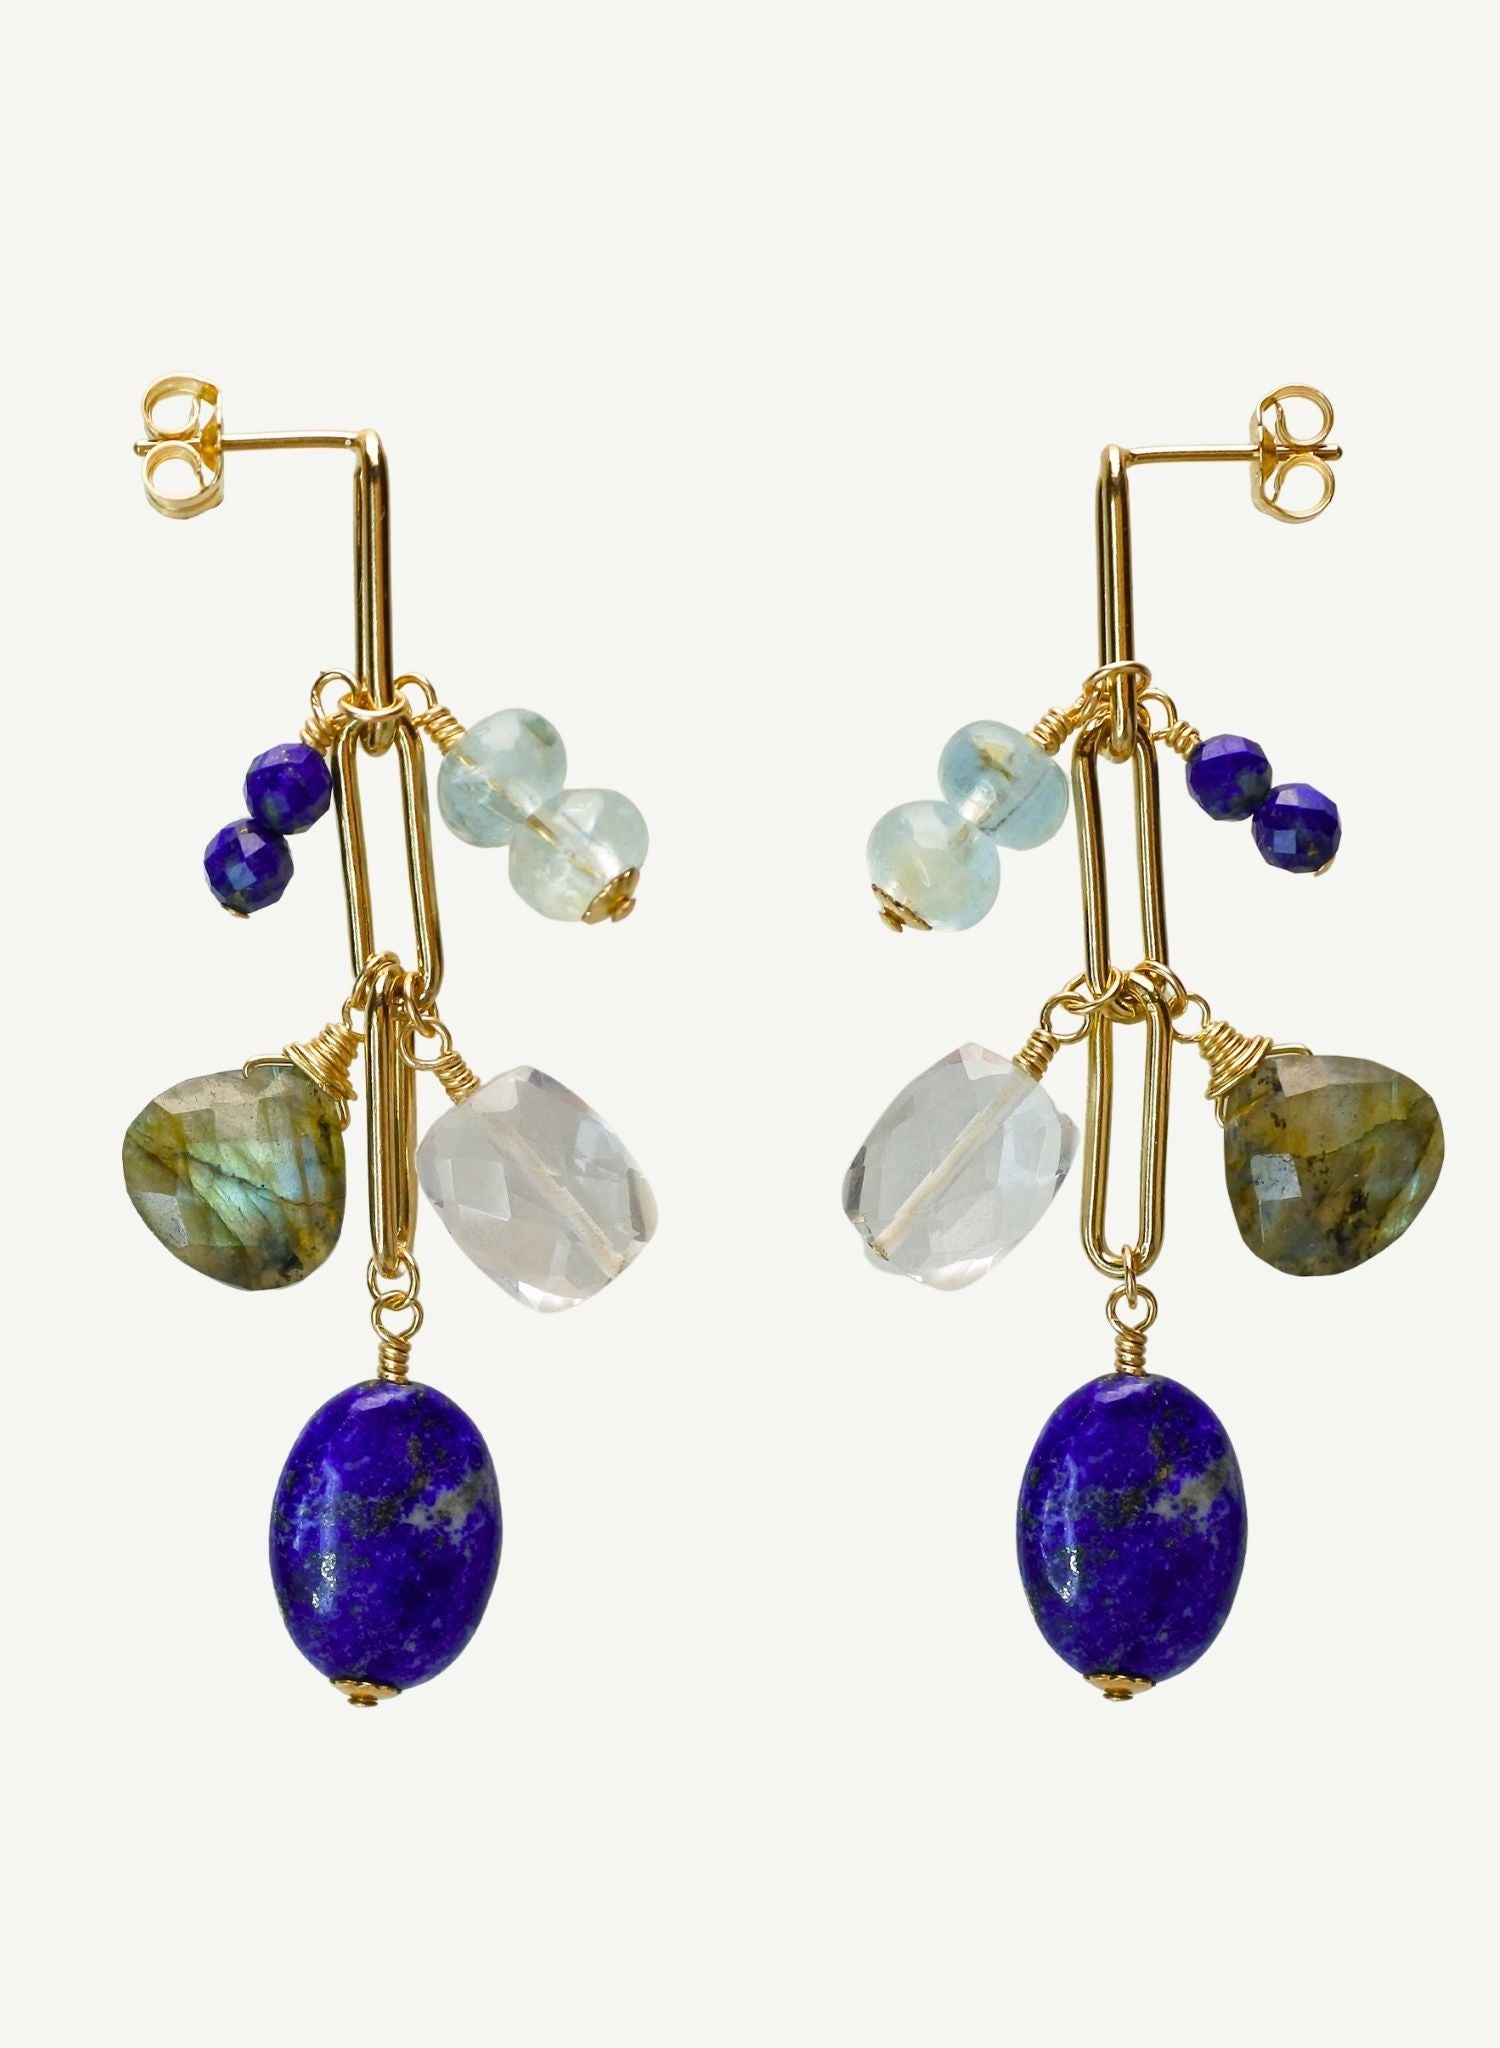 Boucles-oreilles-pmuse-bleue-bijou-femme-madeinfrance-fait-en-france-Bento-jewelry